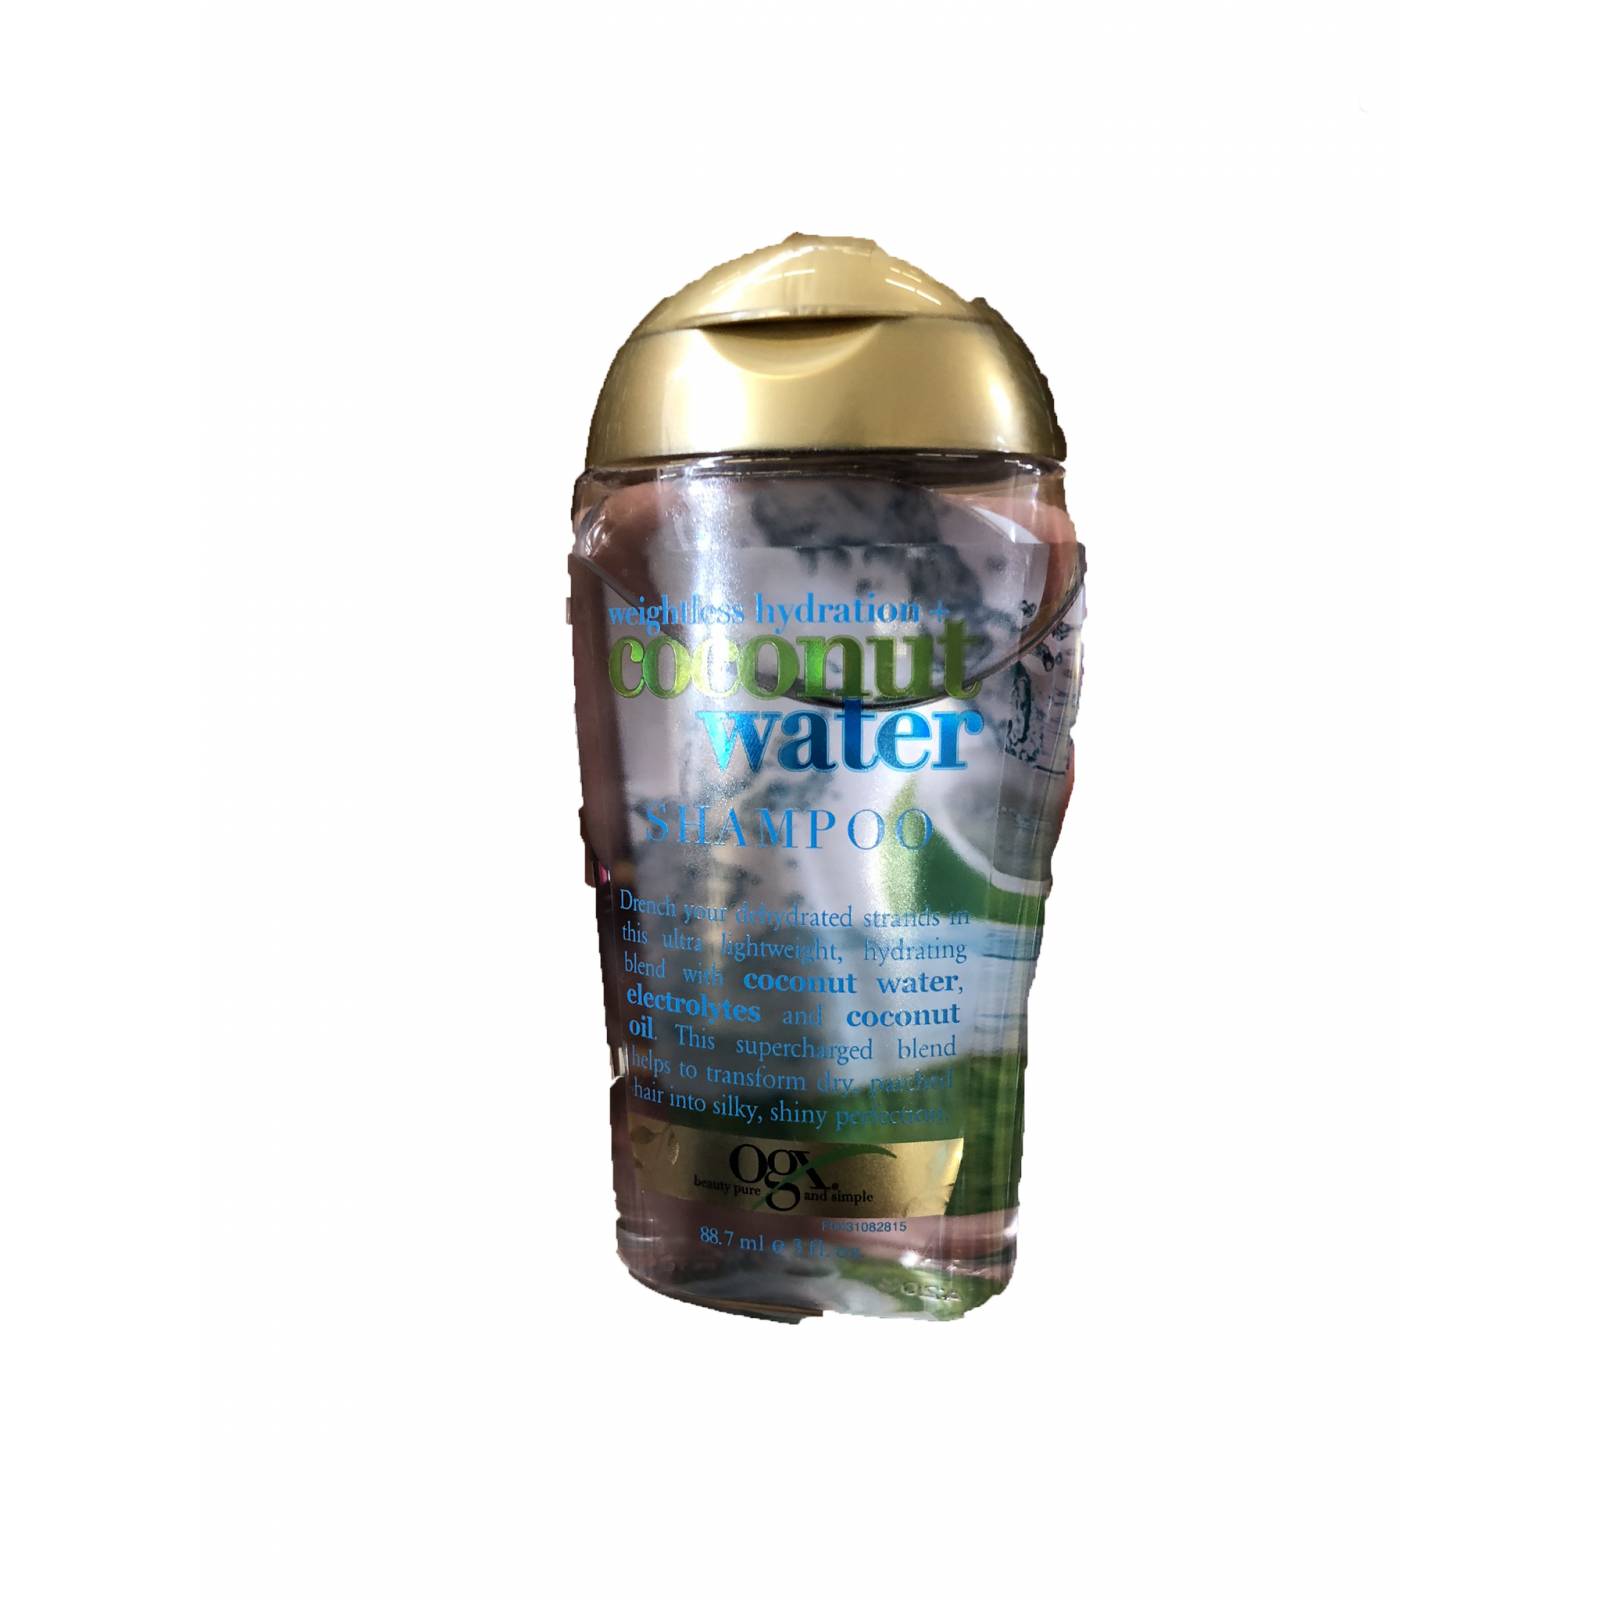 Shampoo liquido tamaño de viaje 88.7 ml Organix OGX Sin sulfatos y sin sales o parabenos - Agua de coco